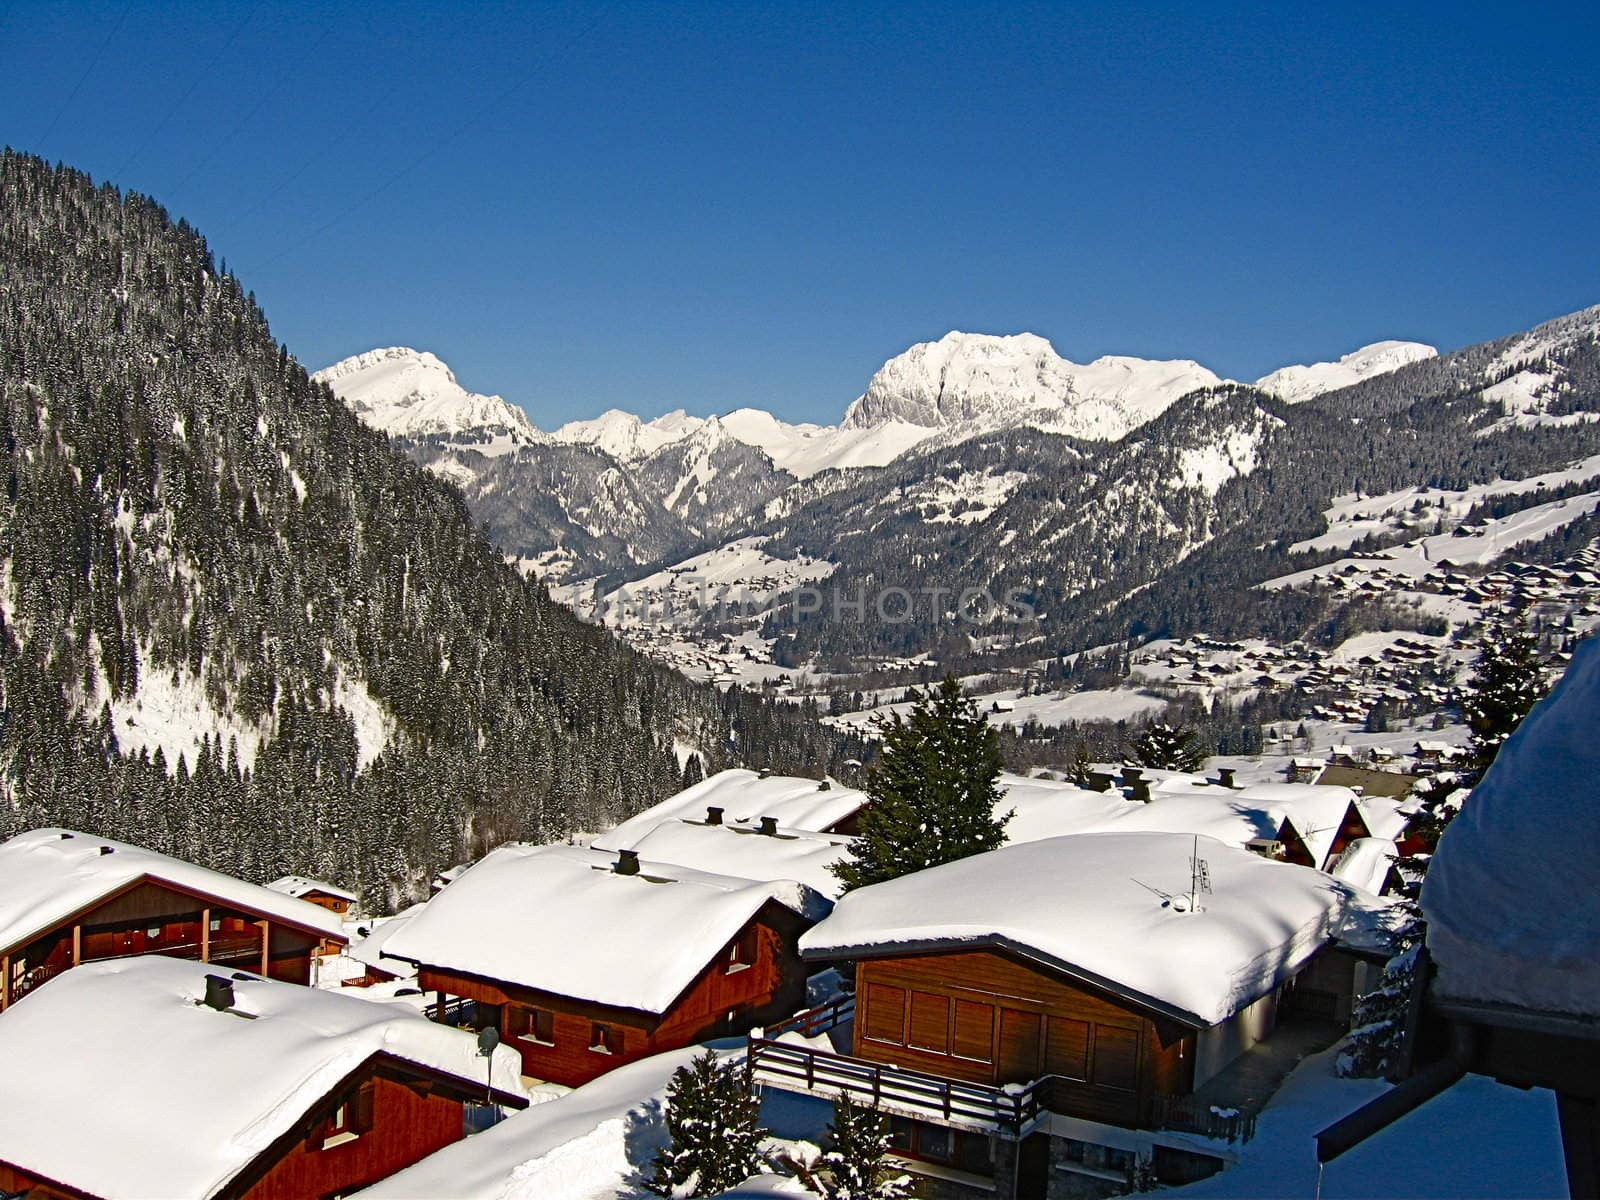 Ski Village by colinelves